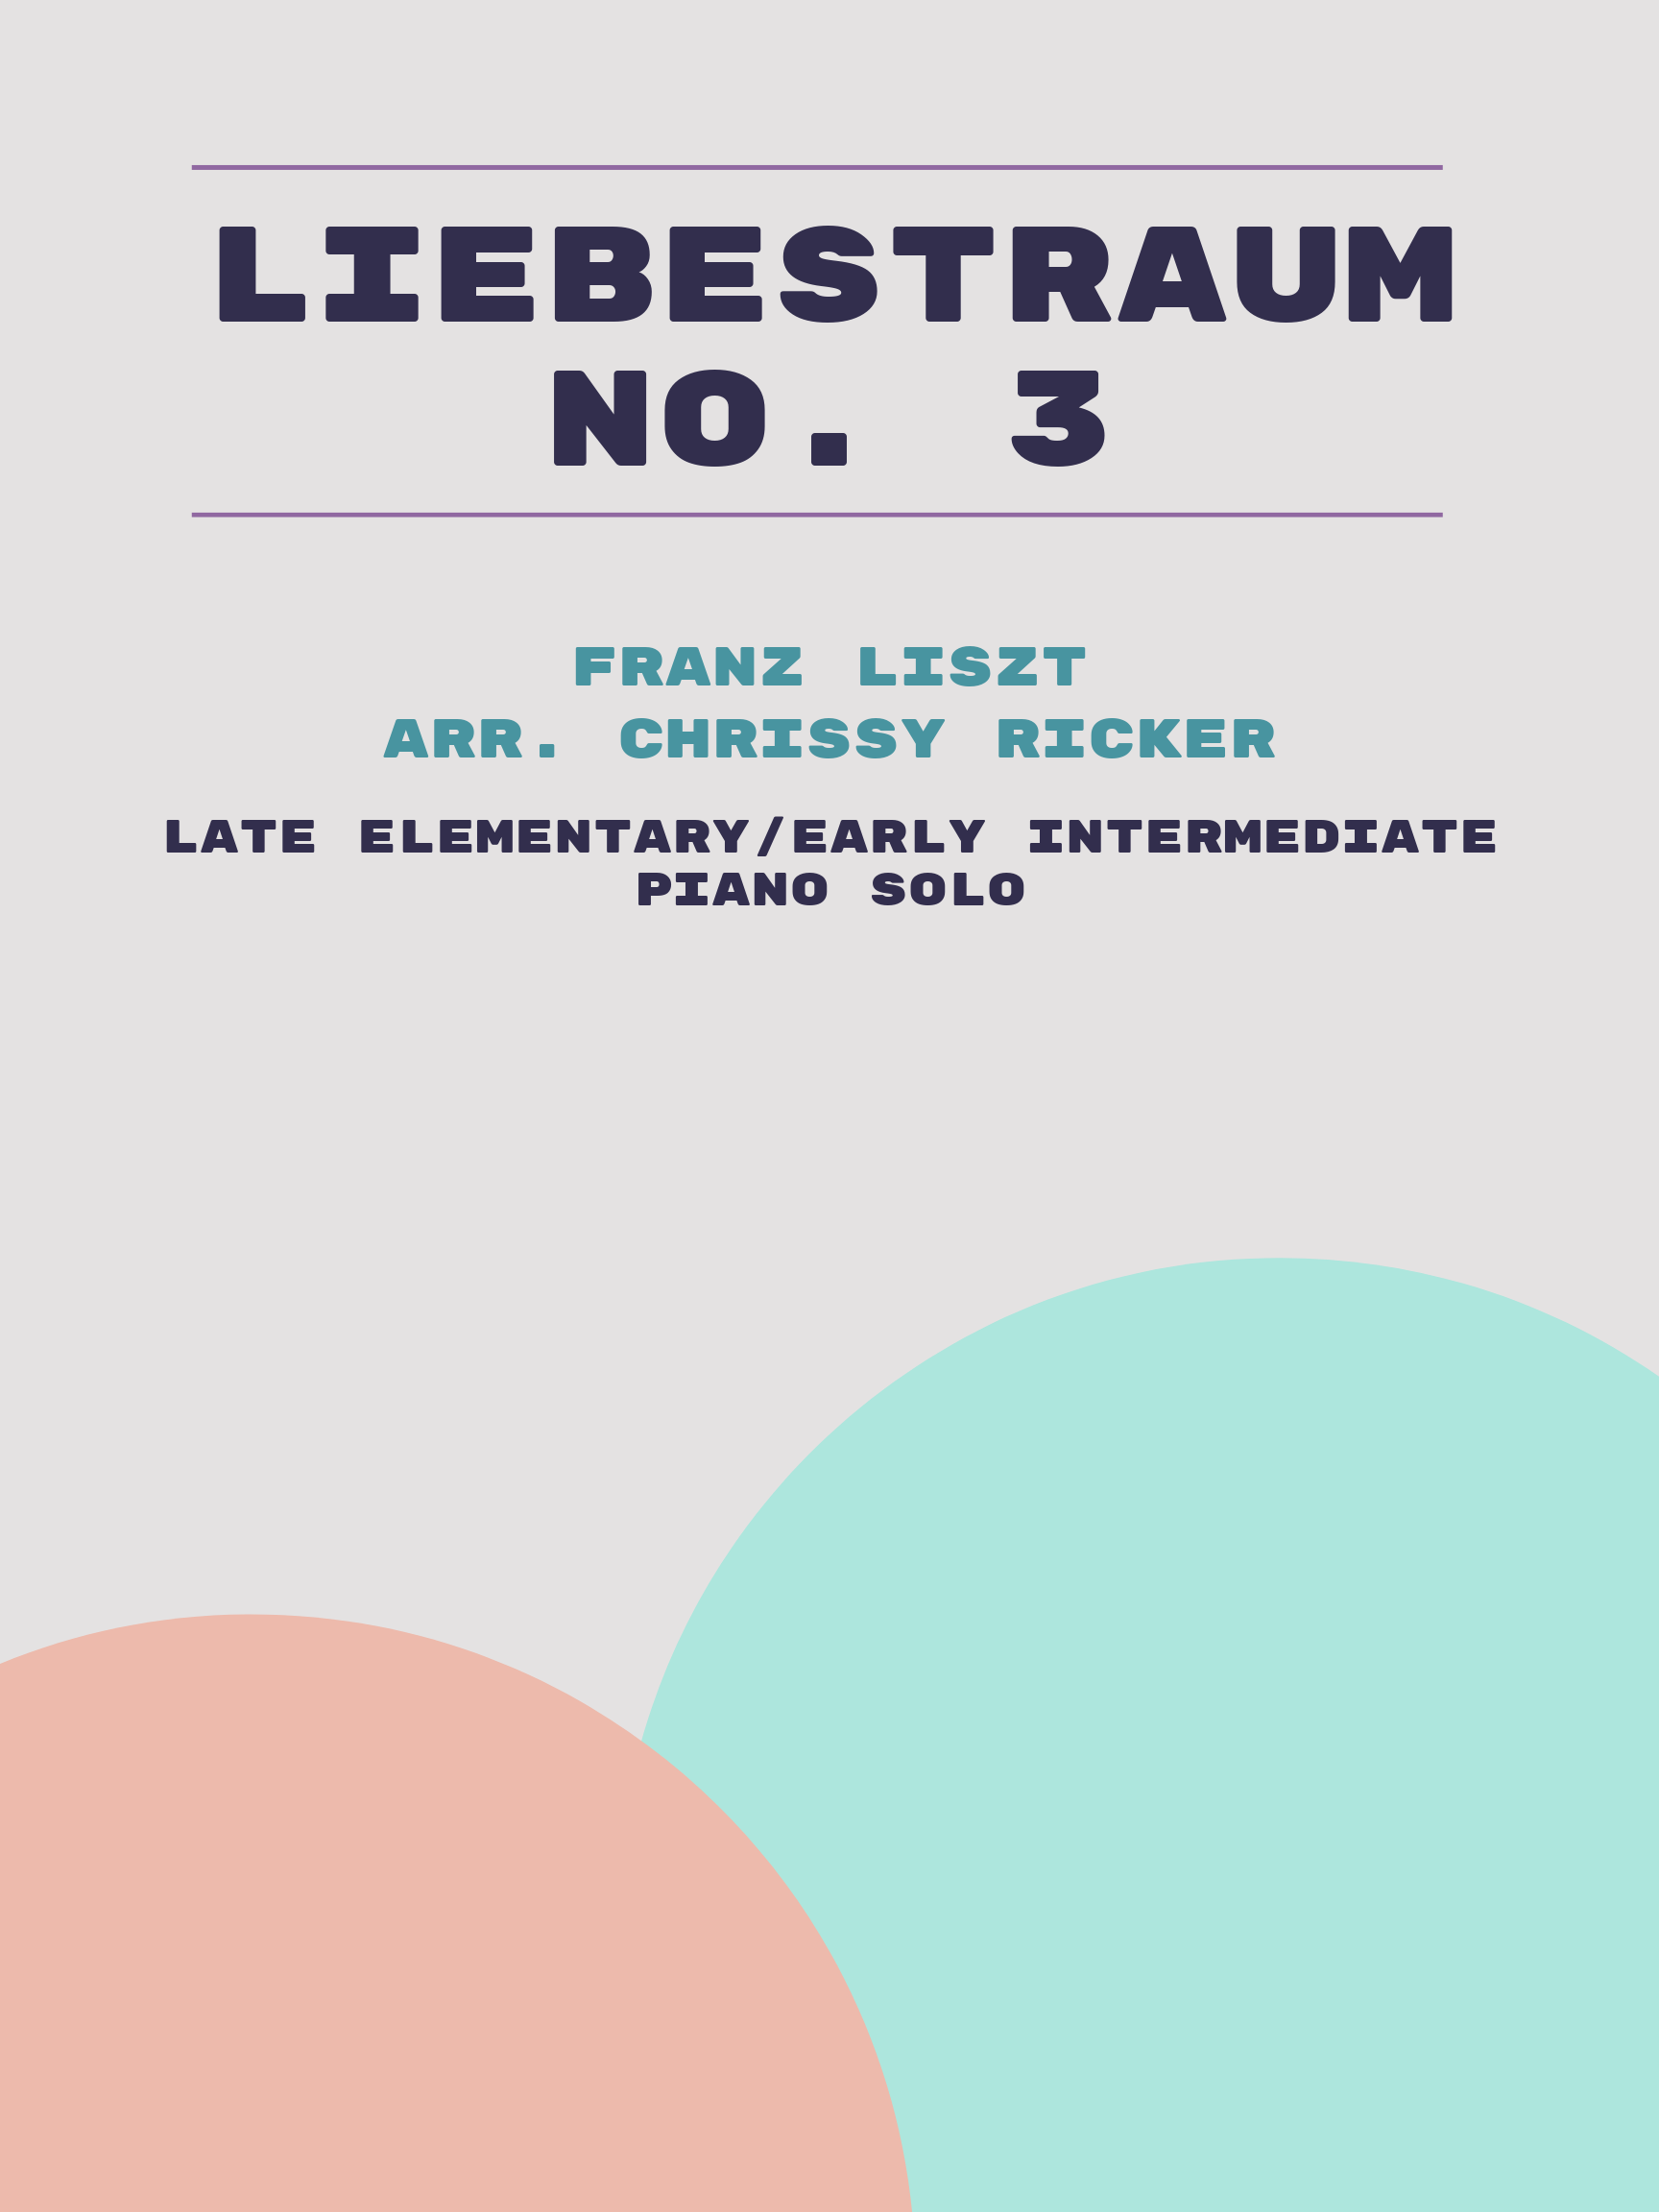 Liebestraum No. 3 by Franz Liszt